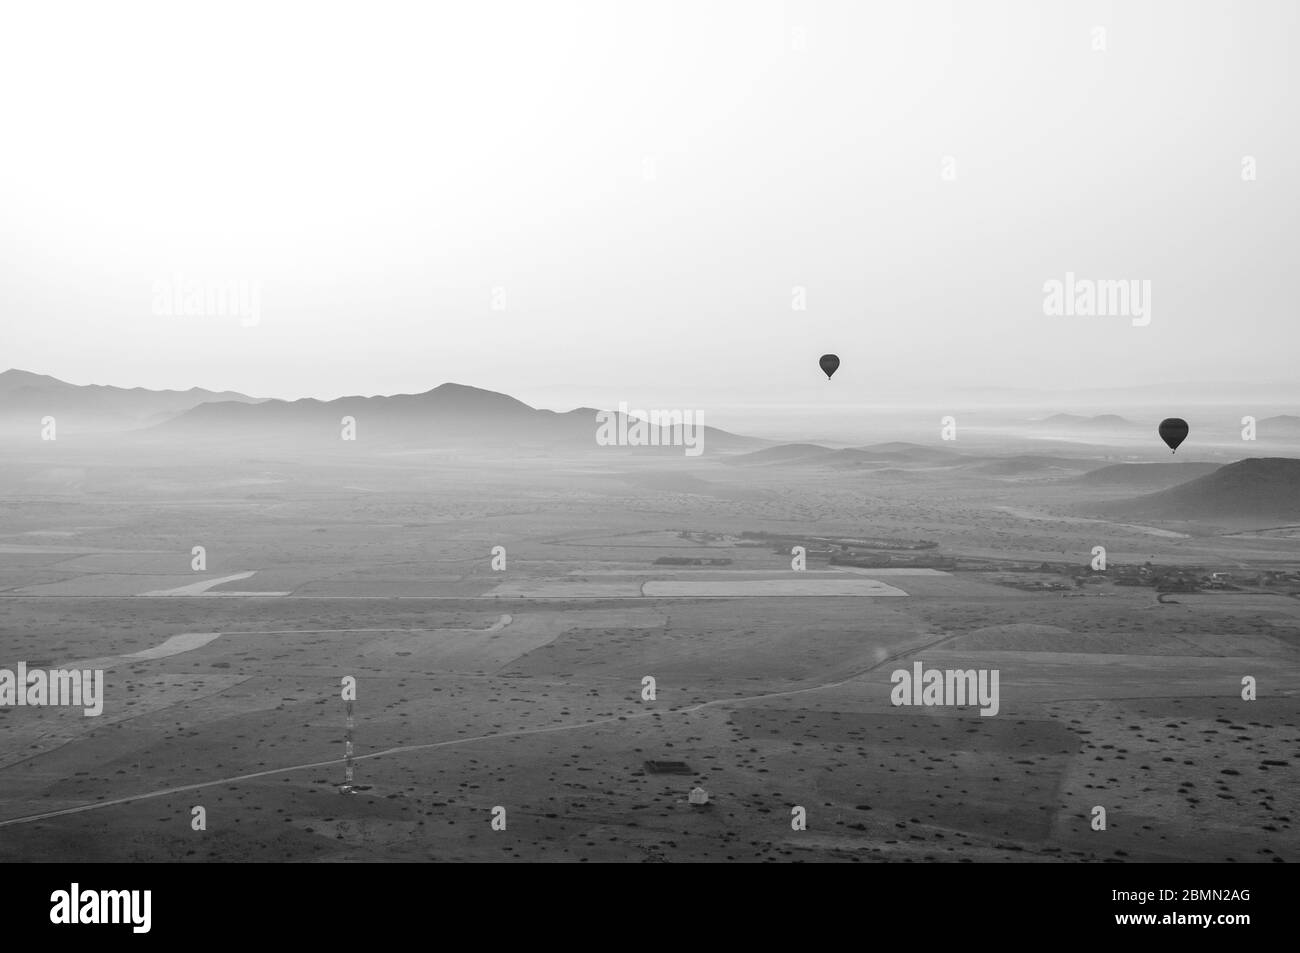 Photo en noir et blanc de style rétro d'une montgolfière au-dessus du Maroc. Deux autres ballons dans l'air au-dessus d'une belle chaîne de montagnes Banque D'Images